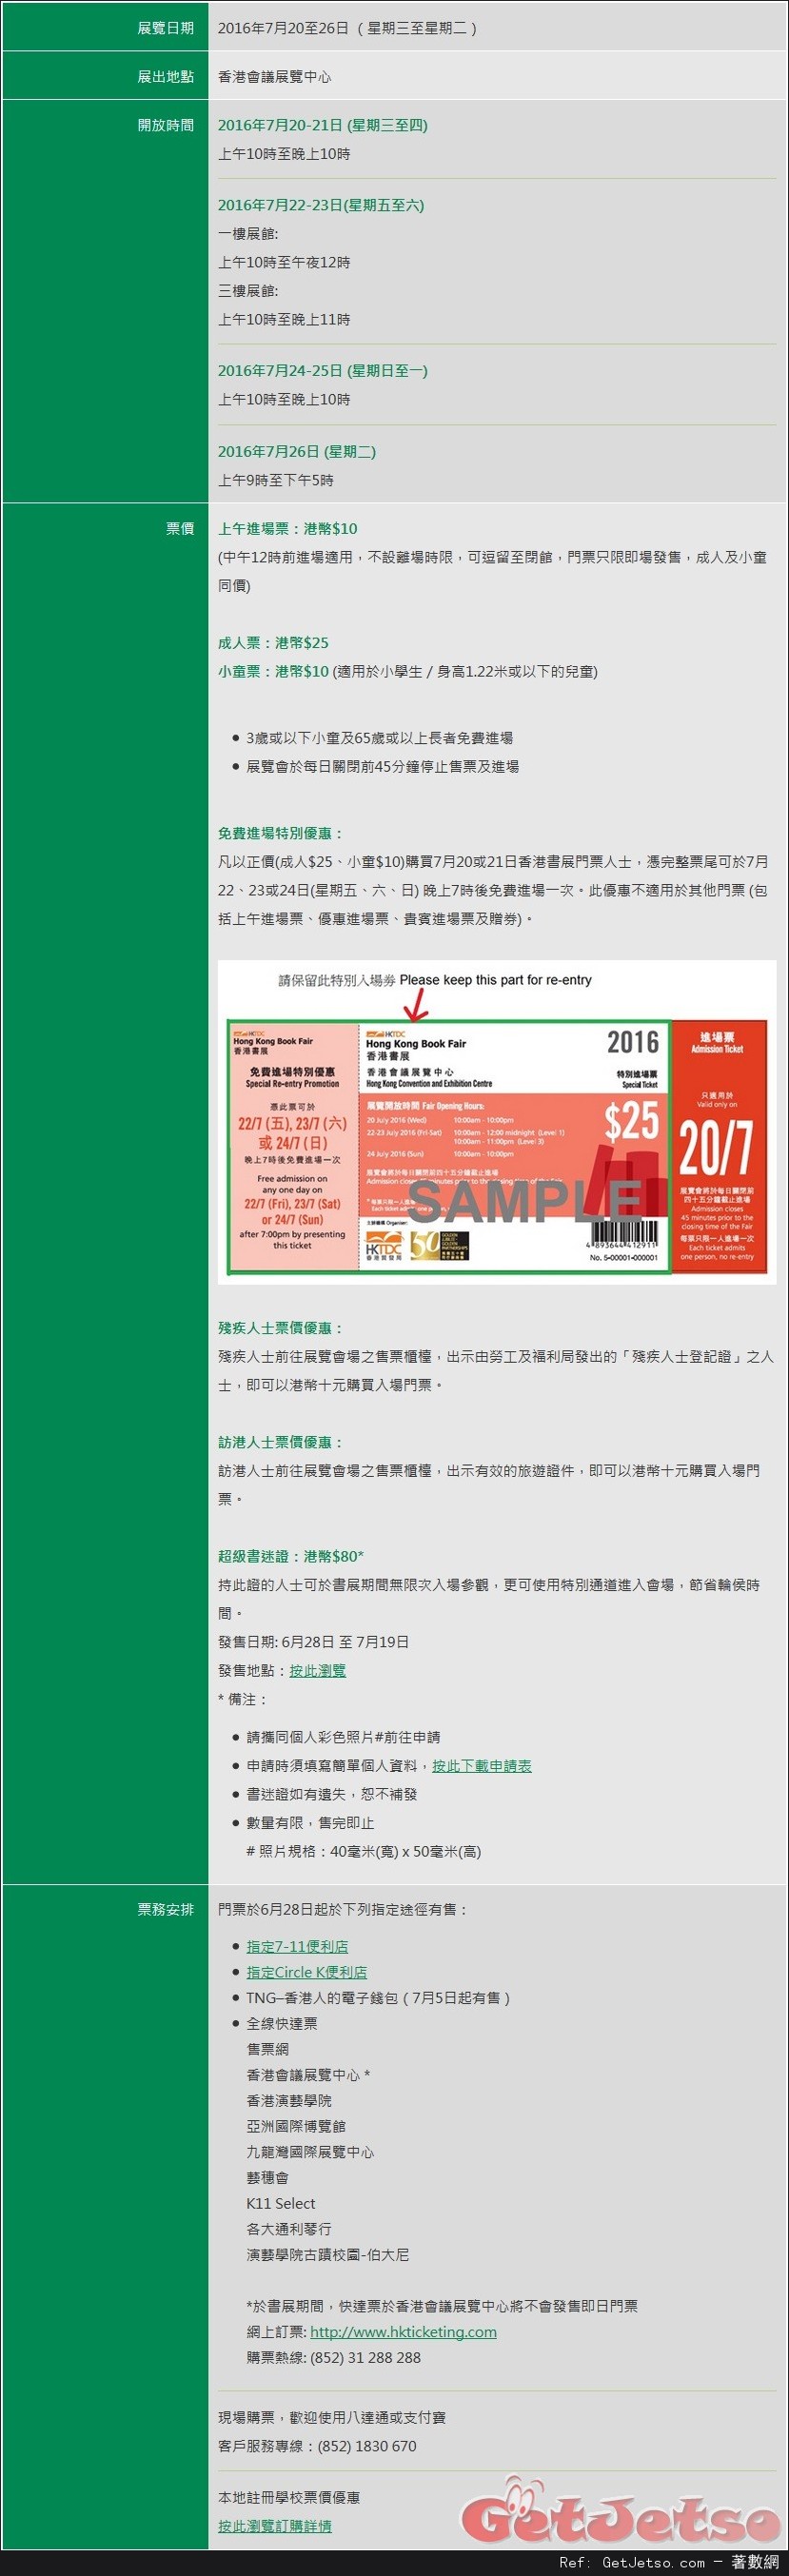 香港書展2016簡介及票務詳情(16年7月20-26日)圖片1